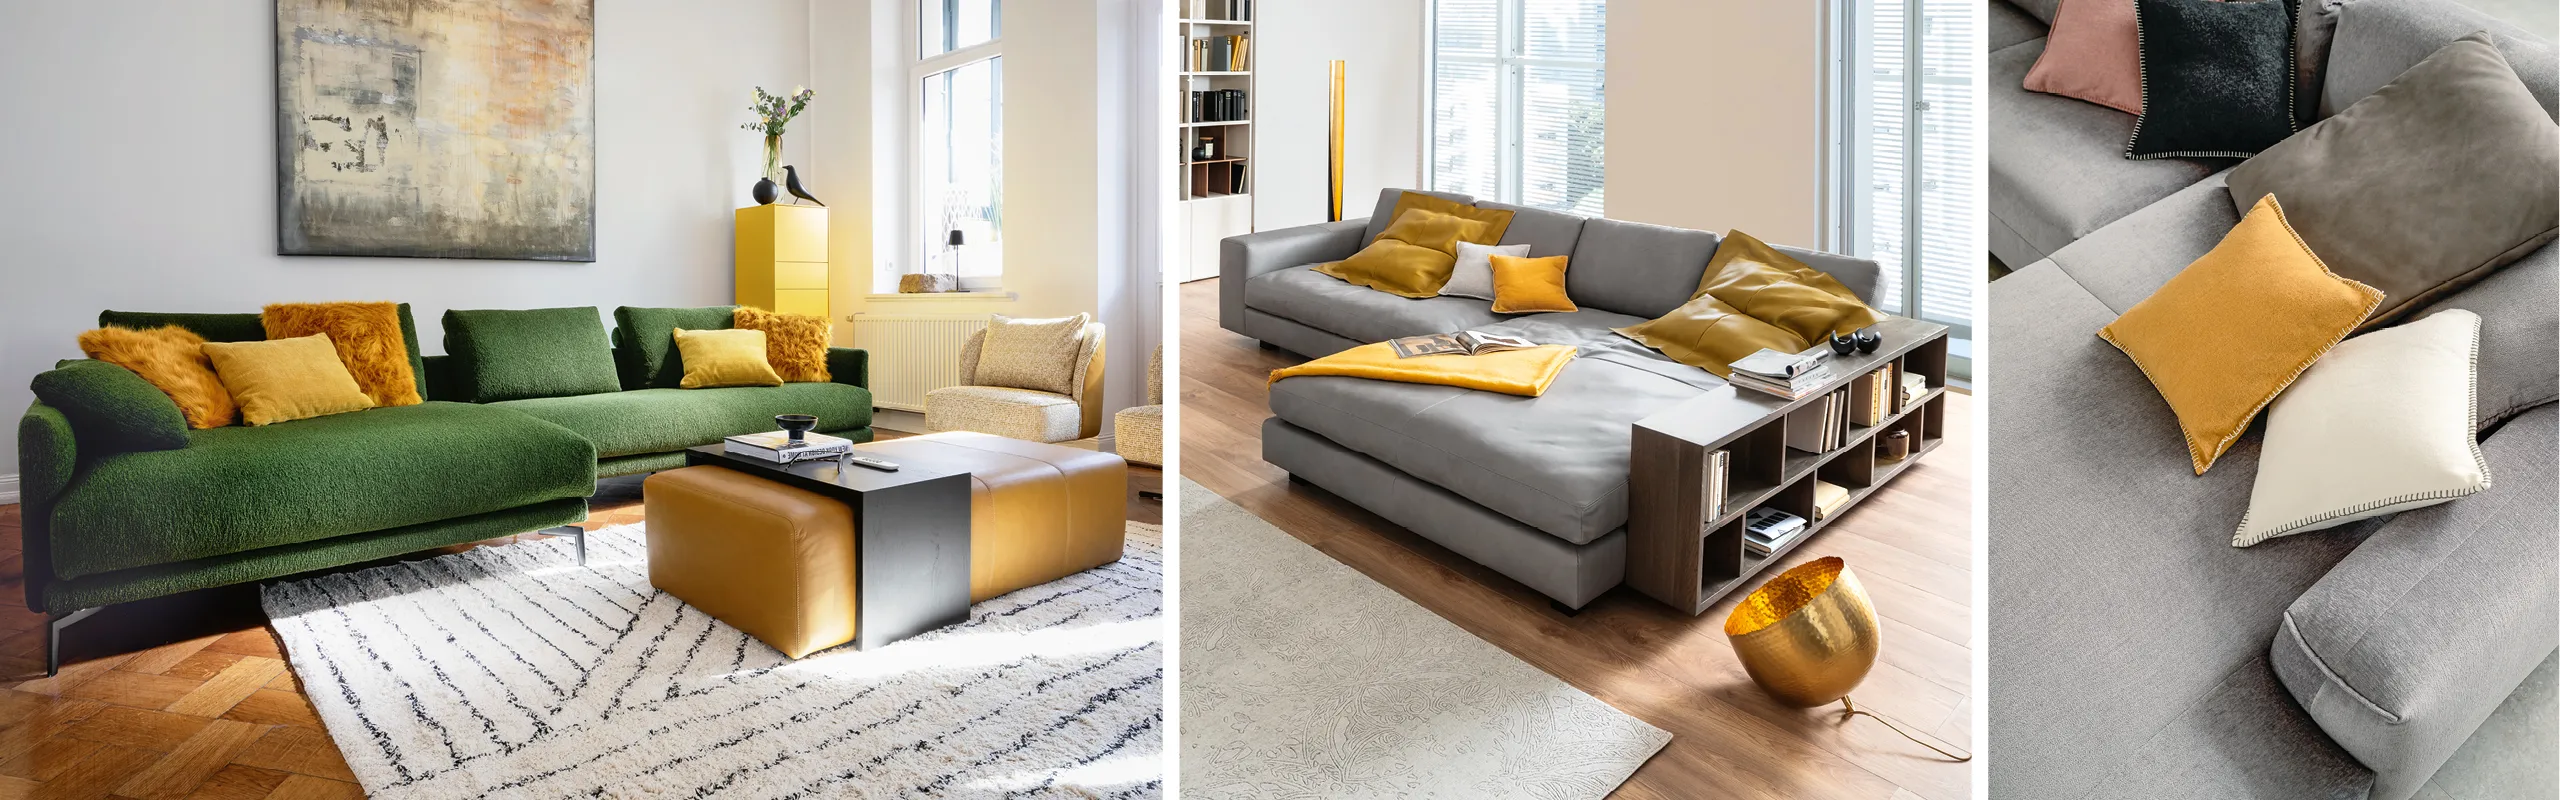 Die Couch prägt den Eindruck des Wohnzimmers in Sachen Stil, Form und Farbe.